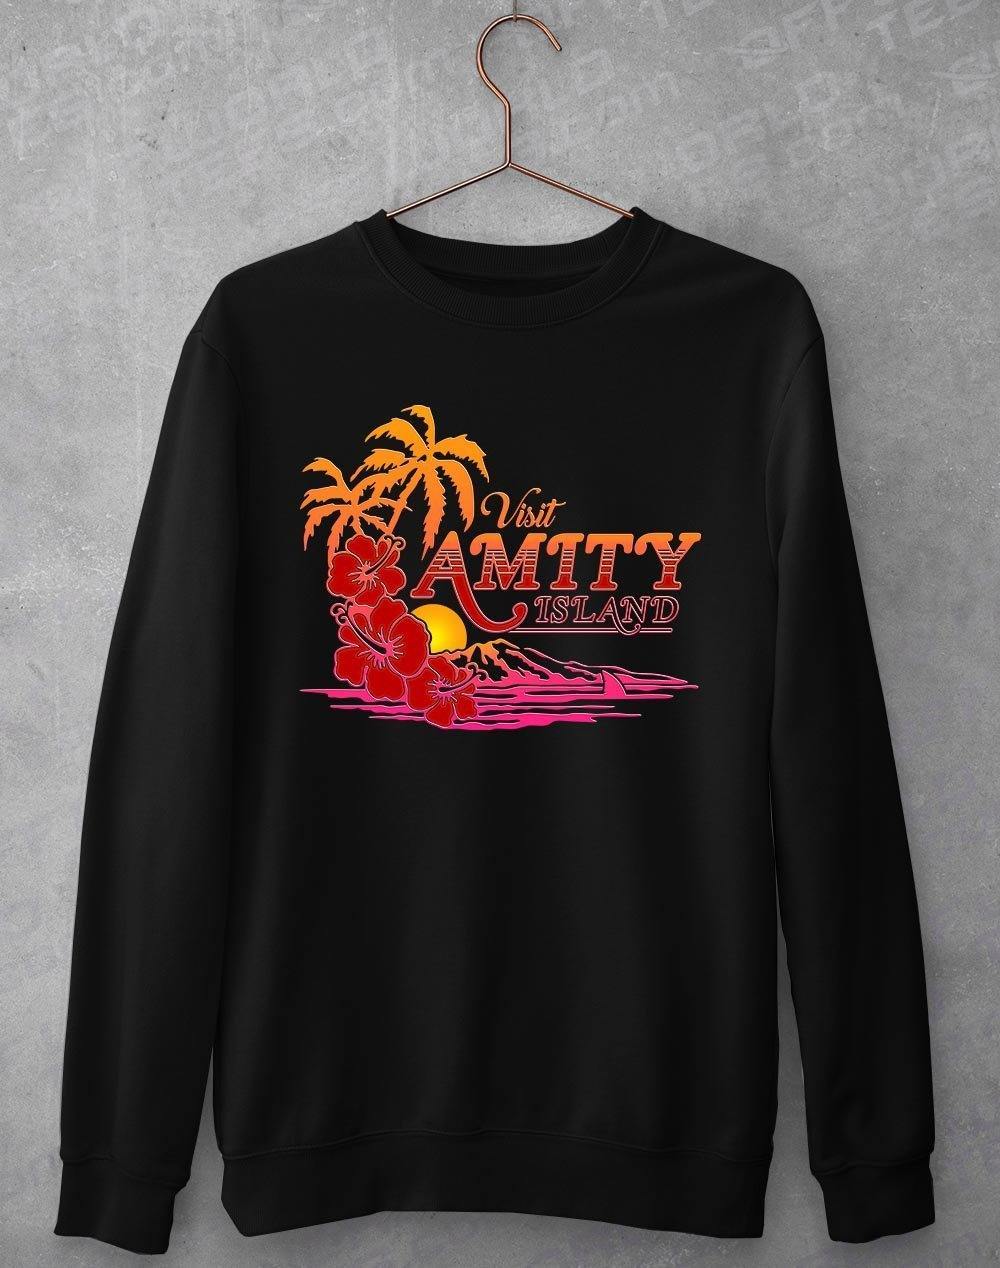 Amity Island Sweatshirt S / Black  - Off World Tees